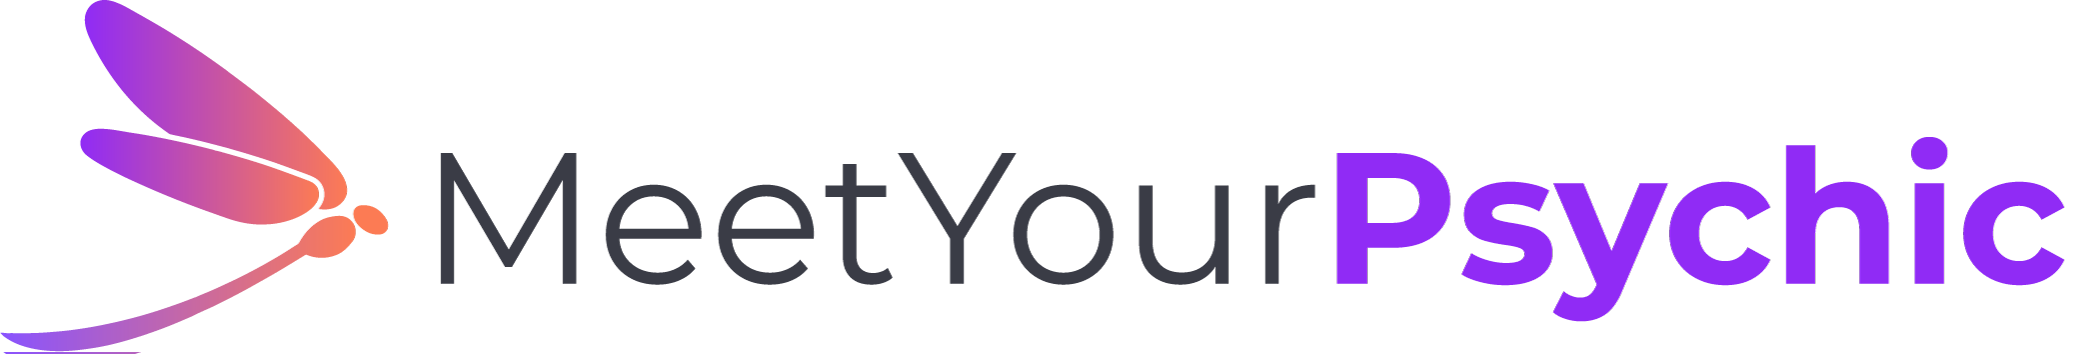 MeetYourPsychic 10th Anniversary Logo